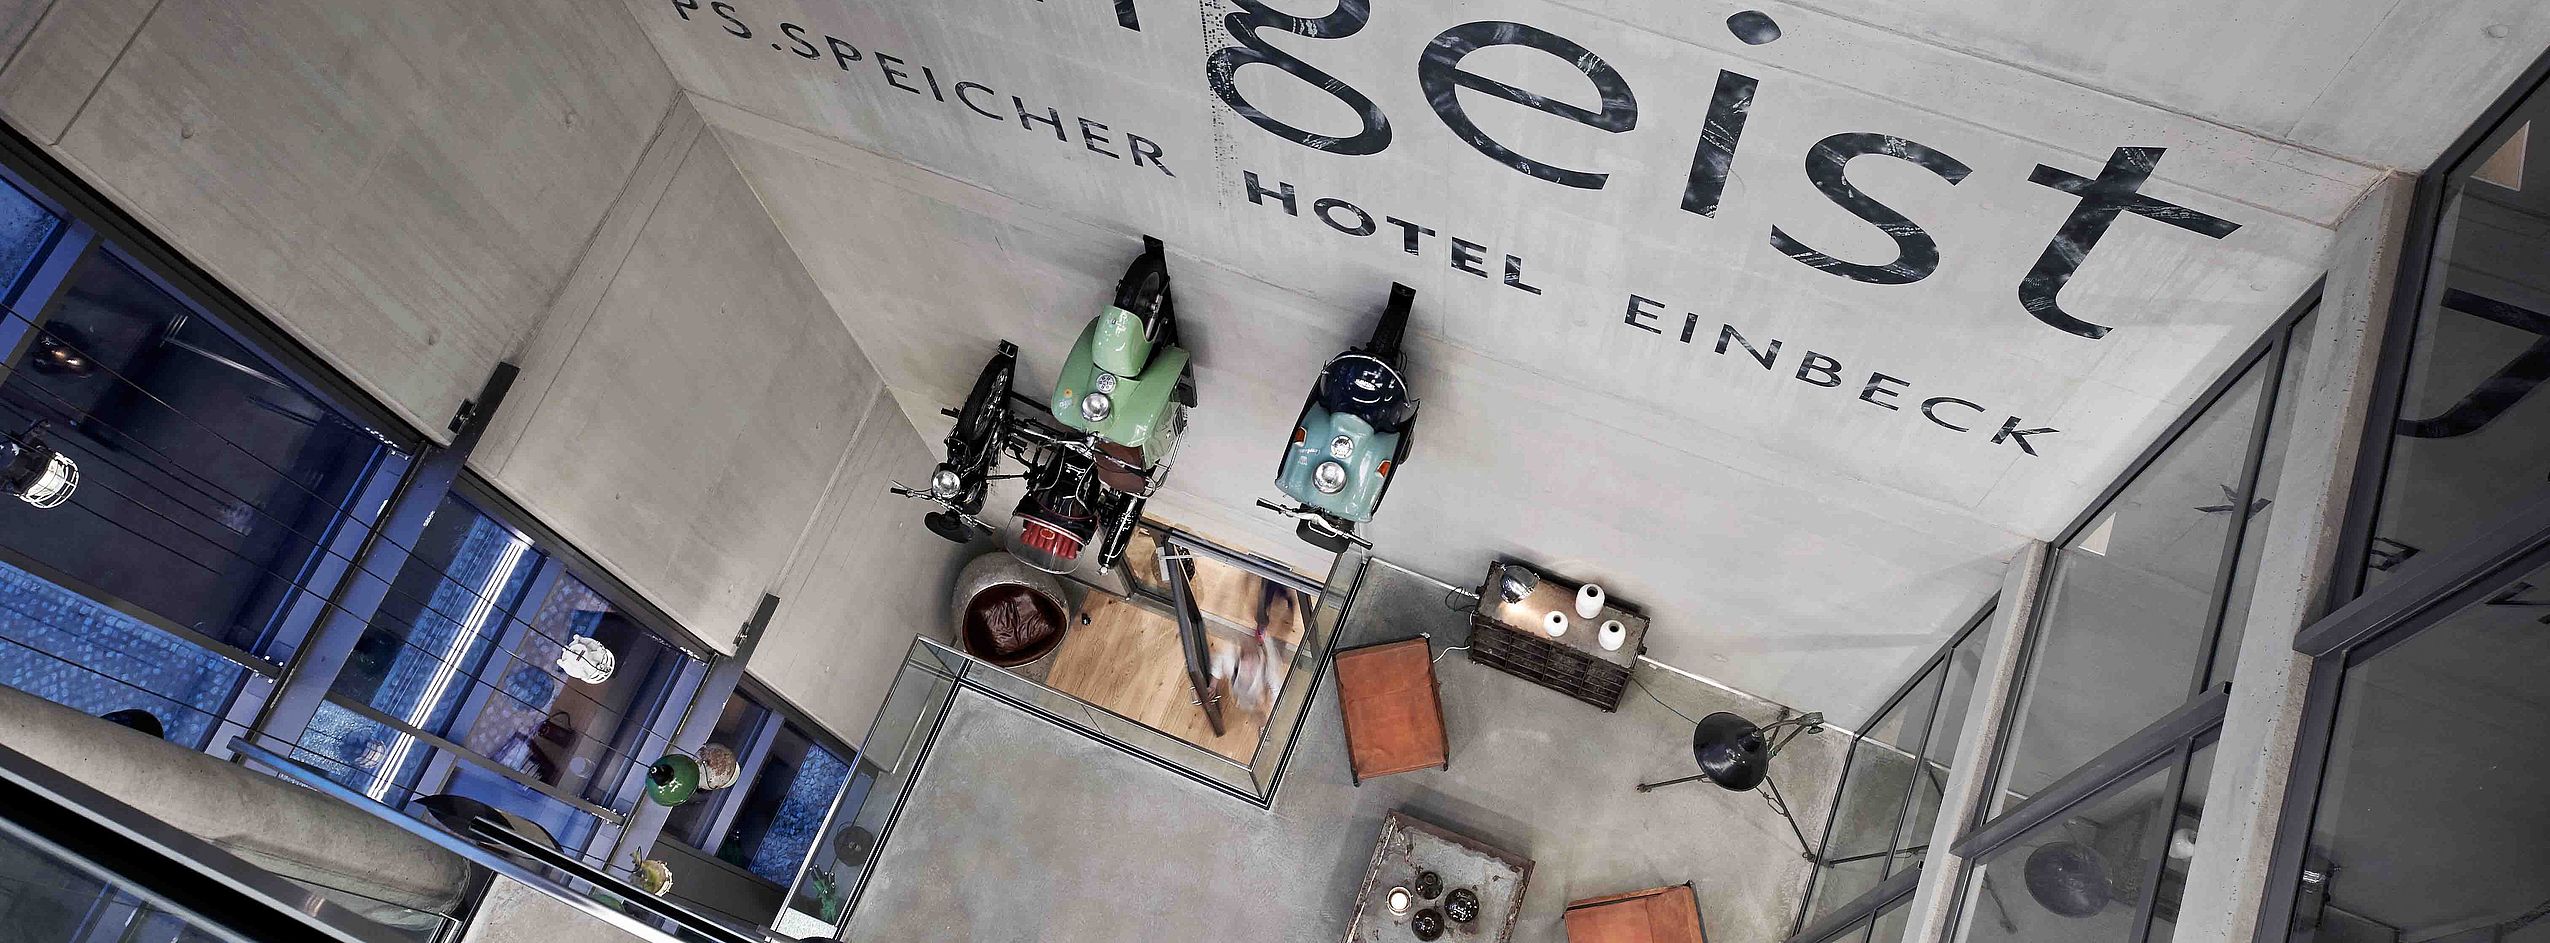 Blick von oben auf die Empfangshalle vom FREIgeist Einbeck, in der zwei Mofas an der Wand hängen